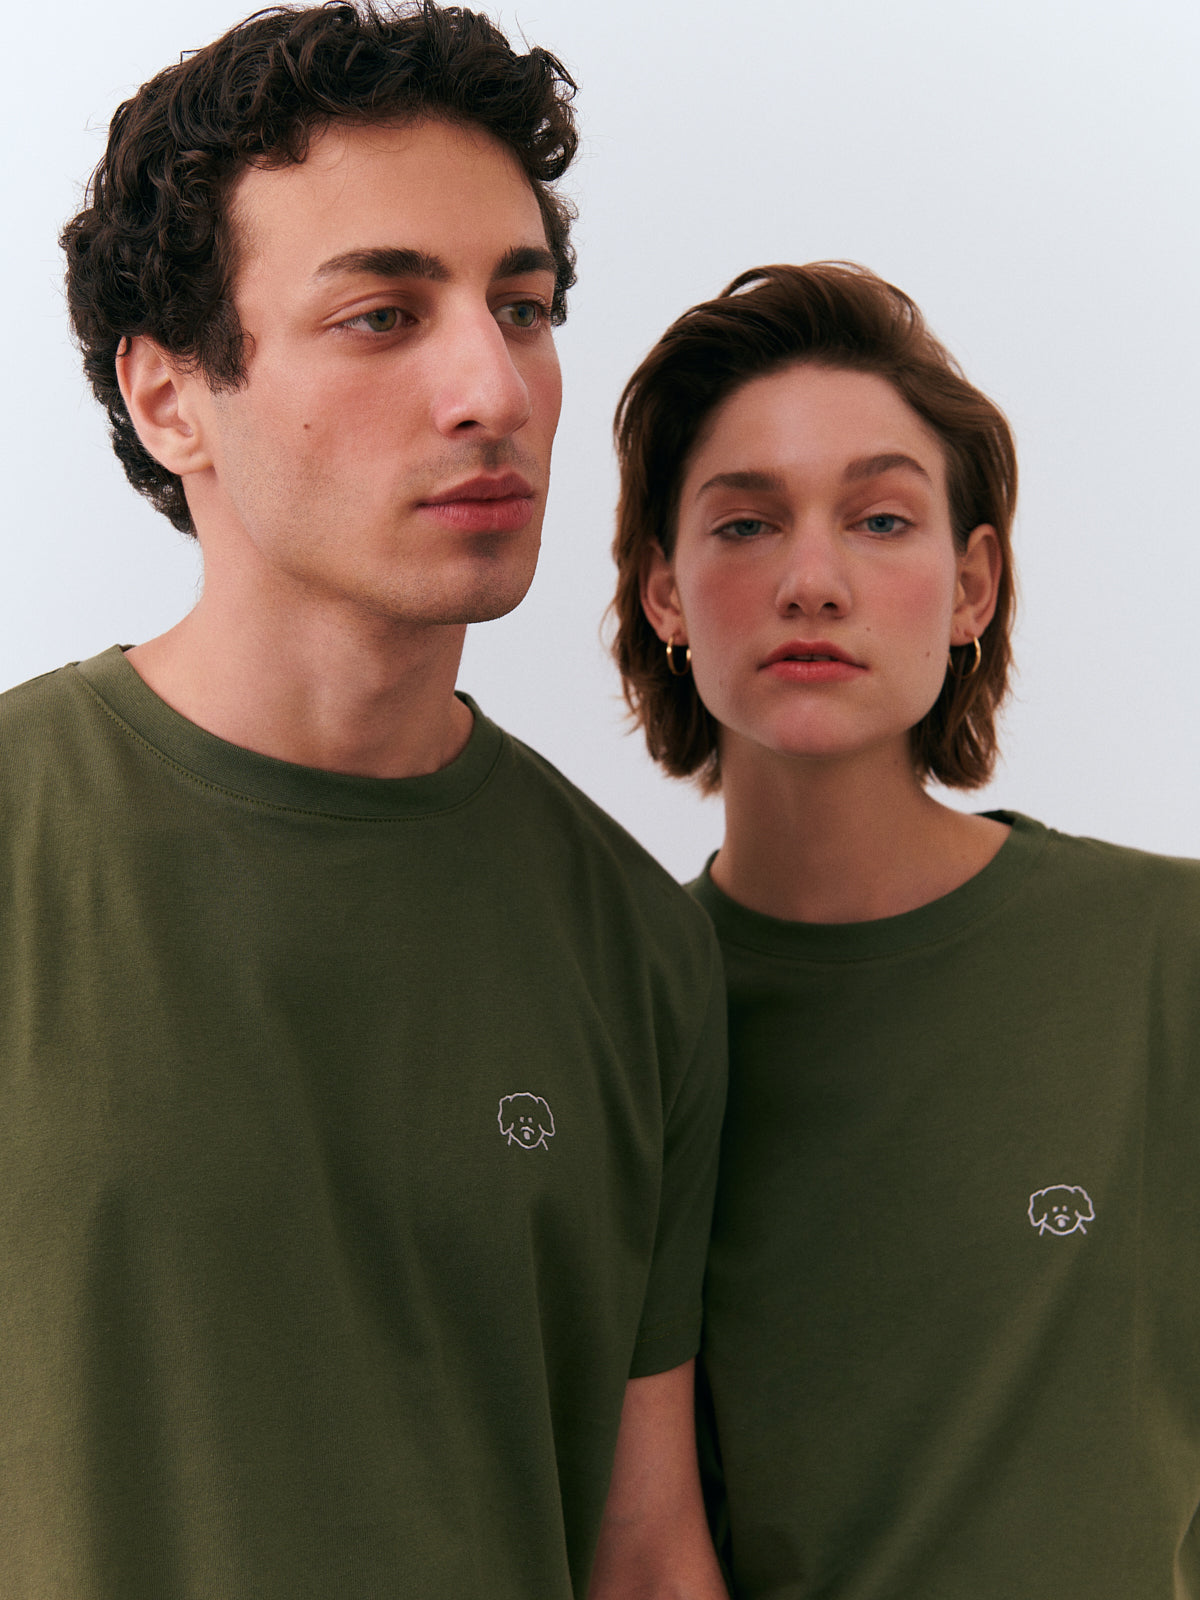 Matchy T-Shirt - Green